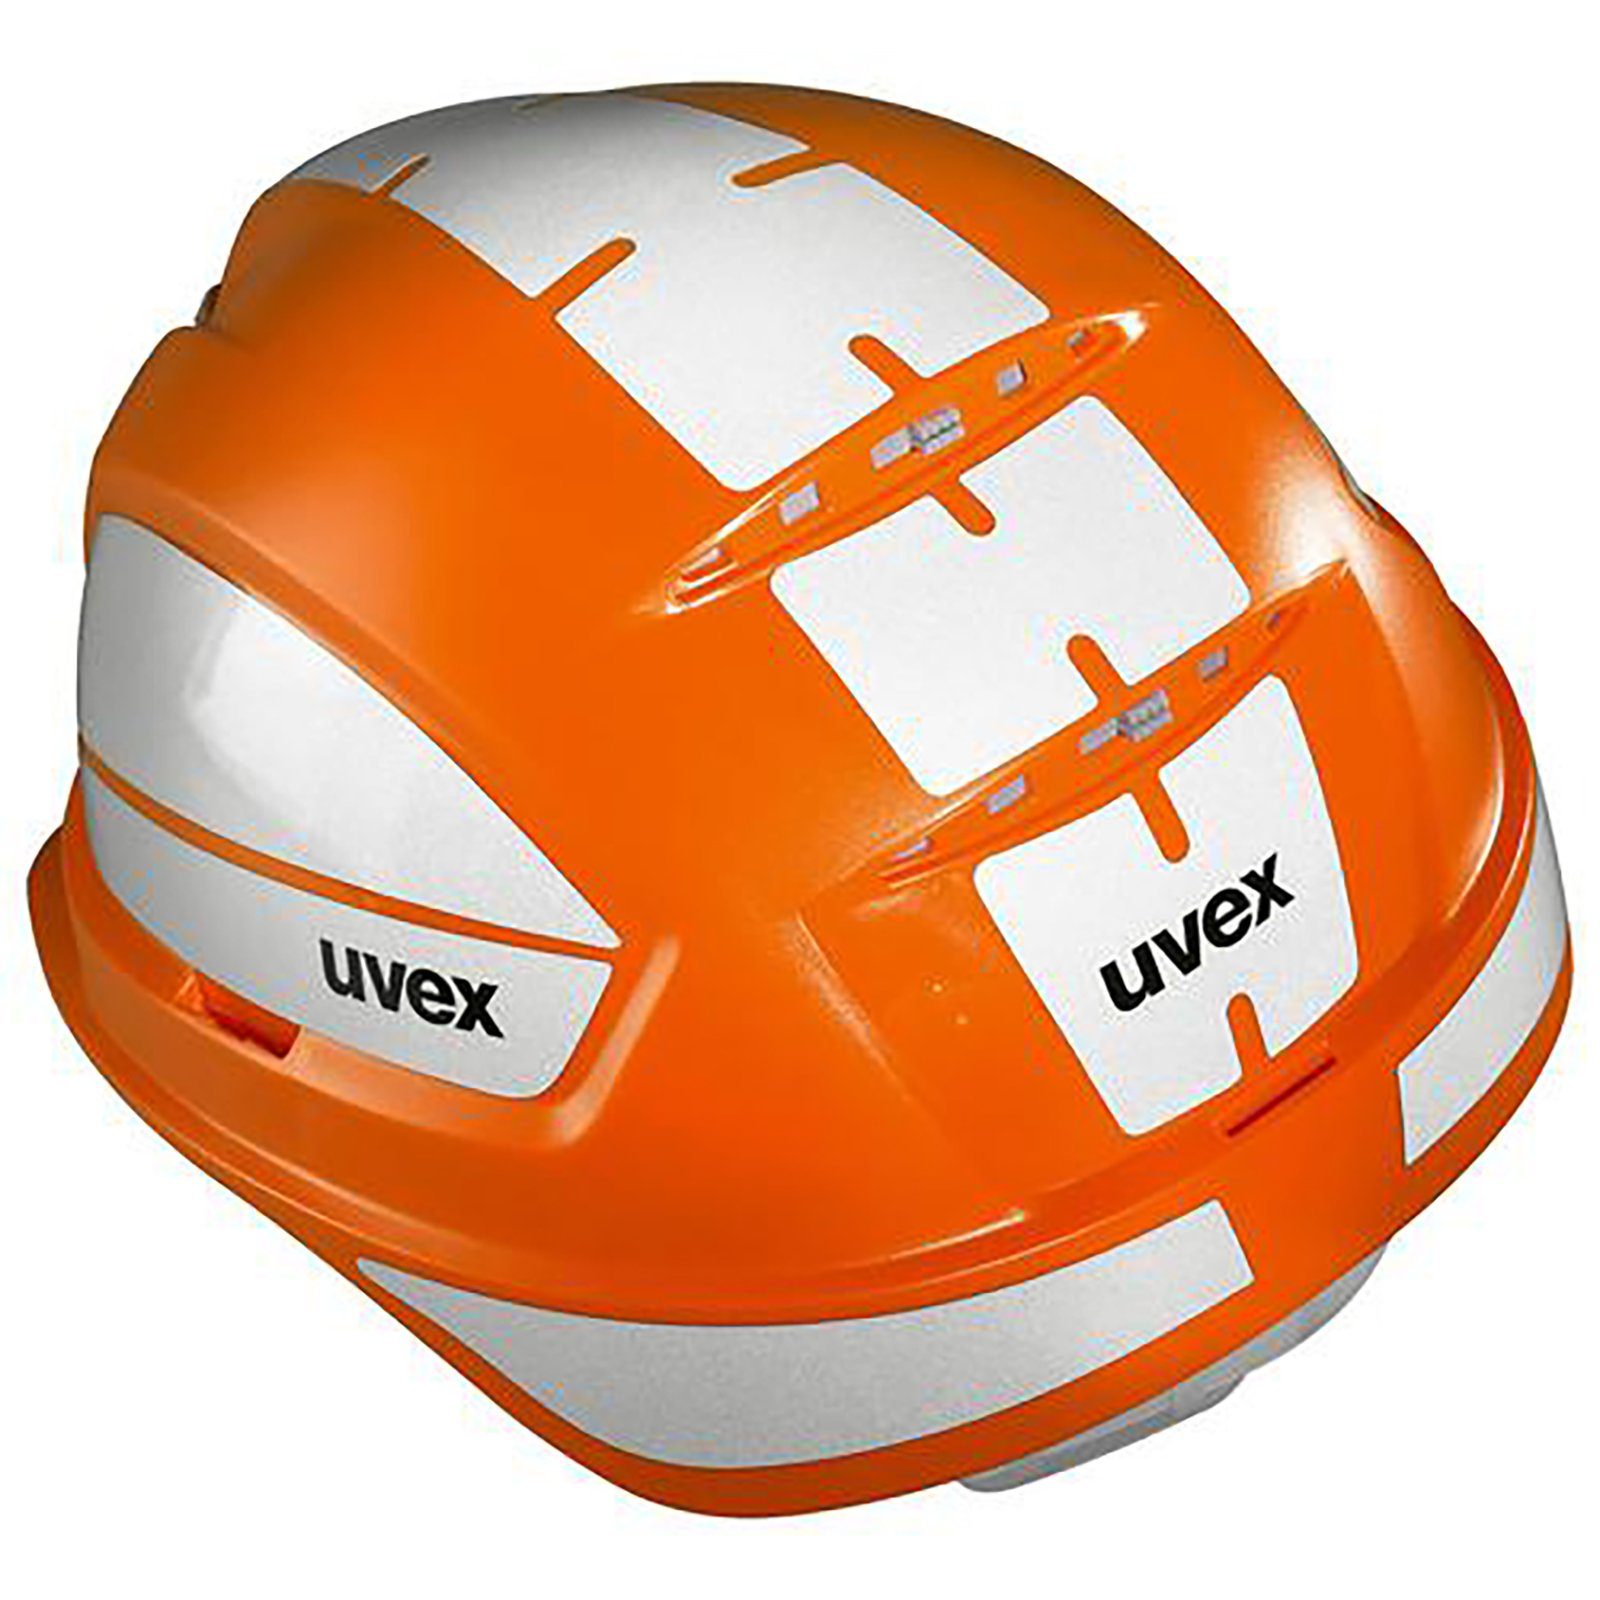 Schutzhelm Sicherheitshelm 9772239 mit Uvex pheos orange Lüftungen